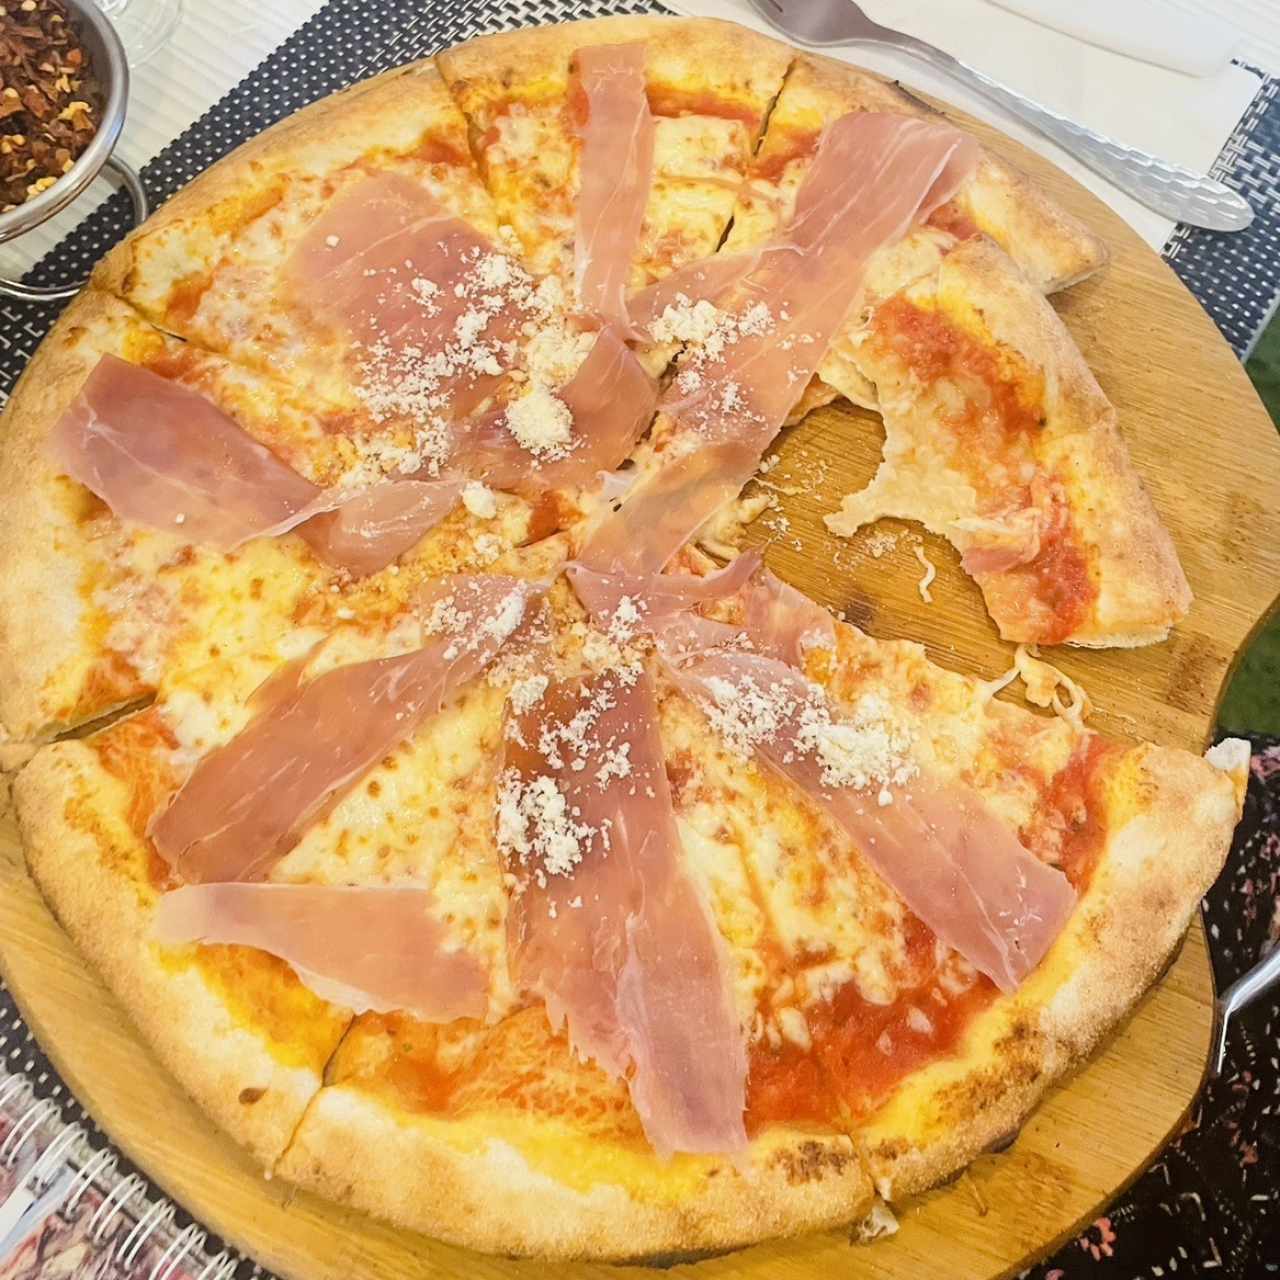 Pizzas 12" - Pizza Prosciutto 12"